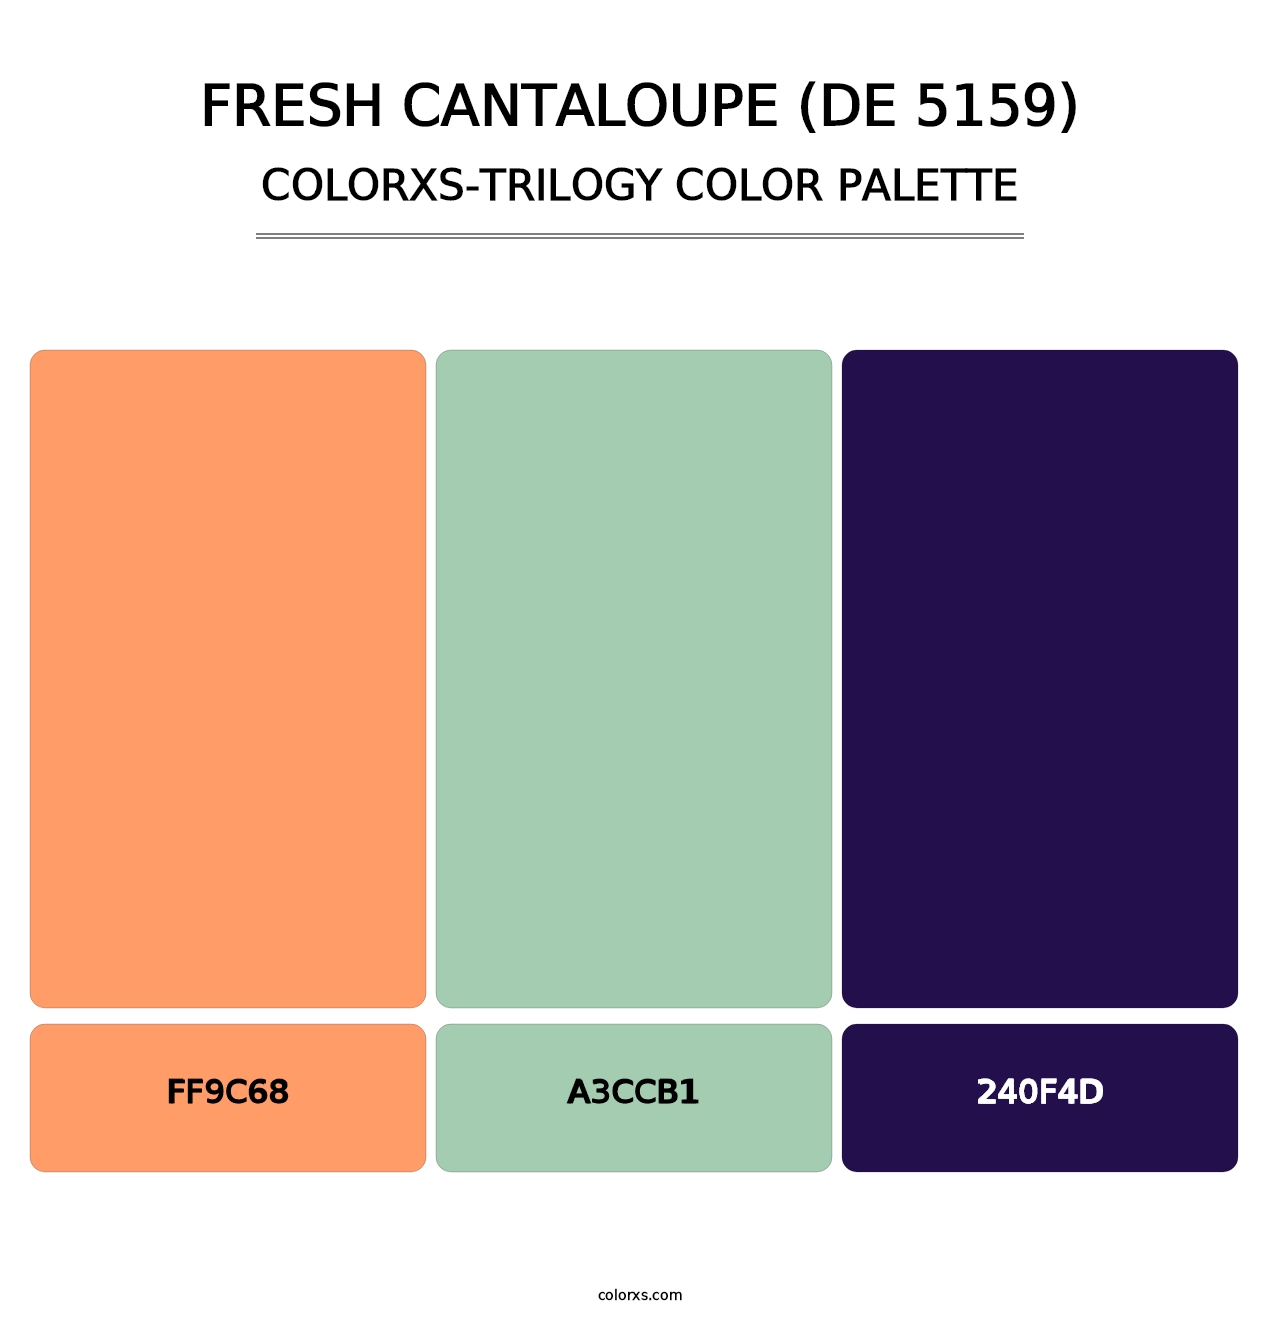 Fresh Cantaloupe (DE 5159) - Colorxs Trilogy Palette